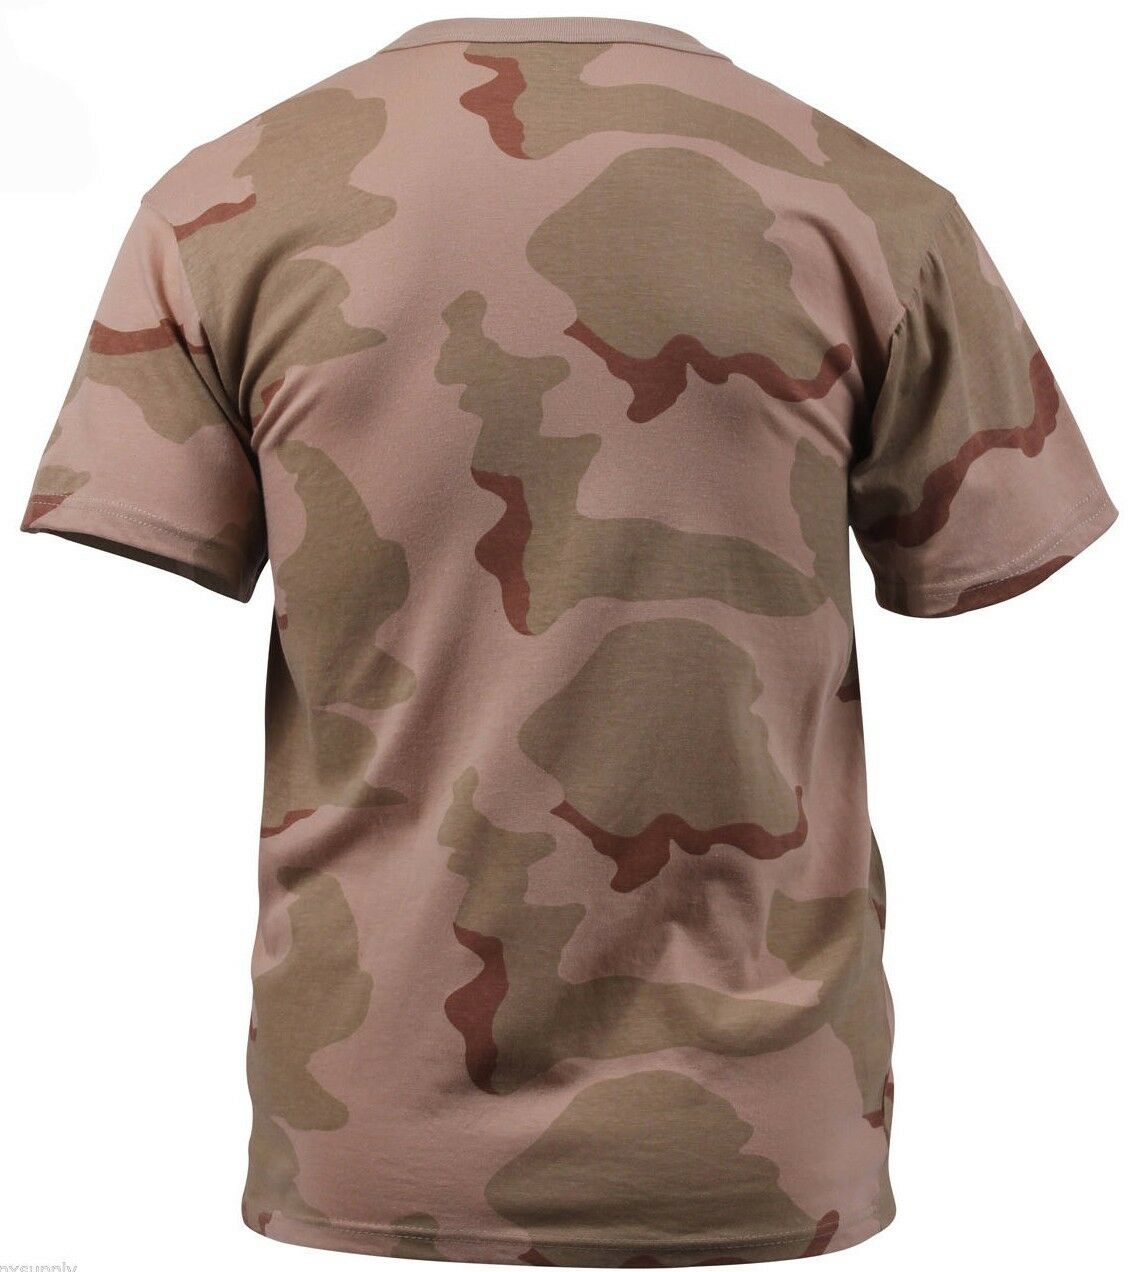 Rothco Camo T-shirt - Tri Color Desert Camo